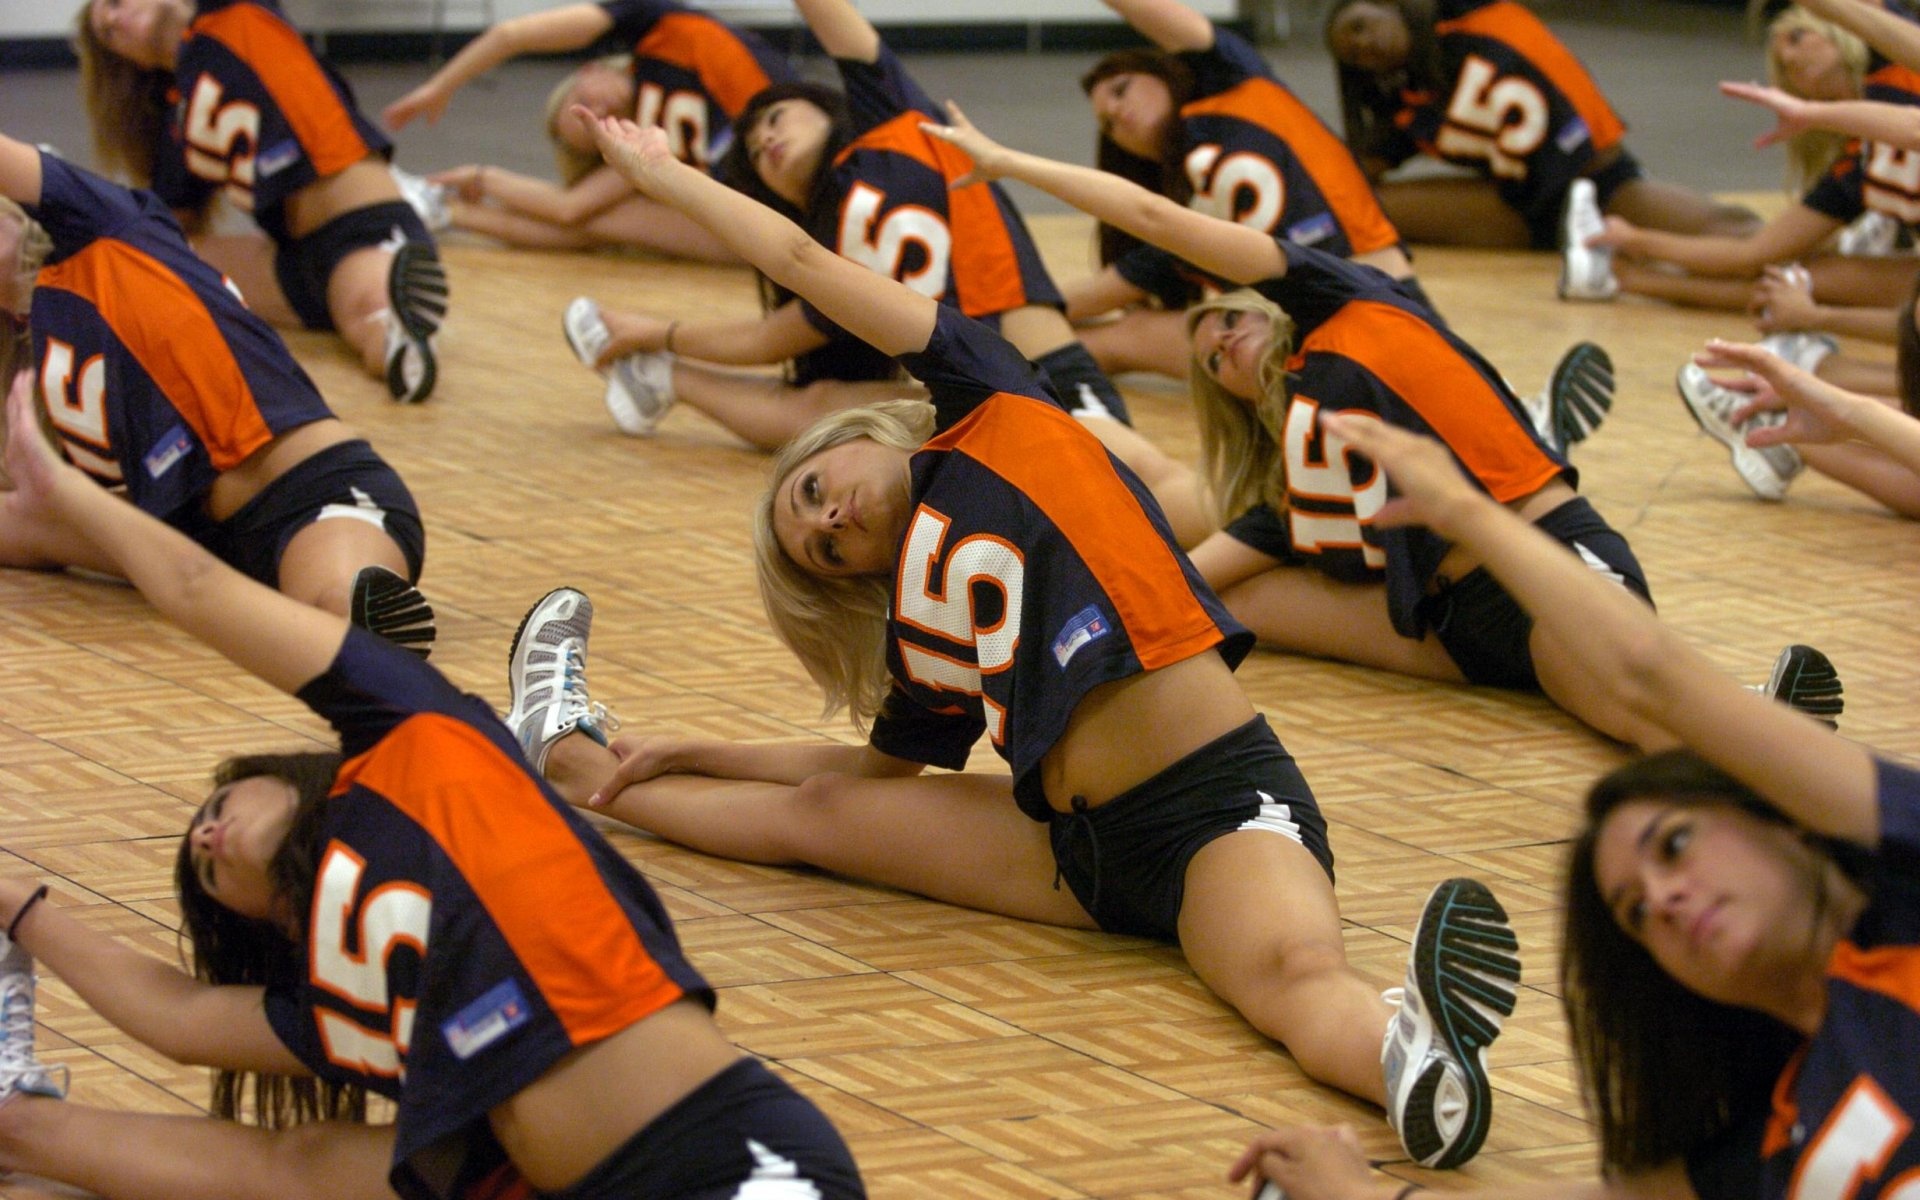 Denver Broncos Cheerleaders Practicing